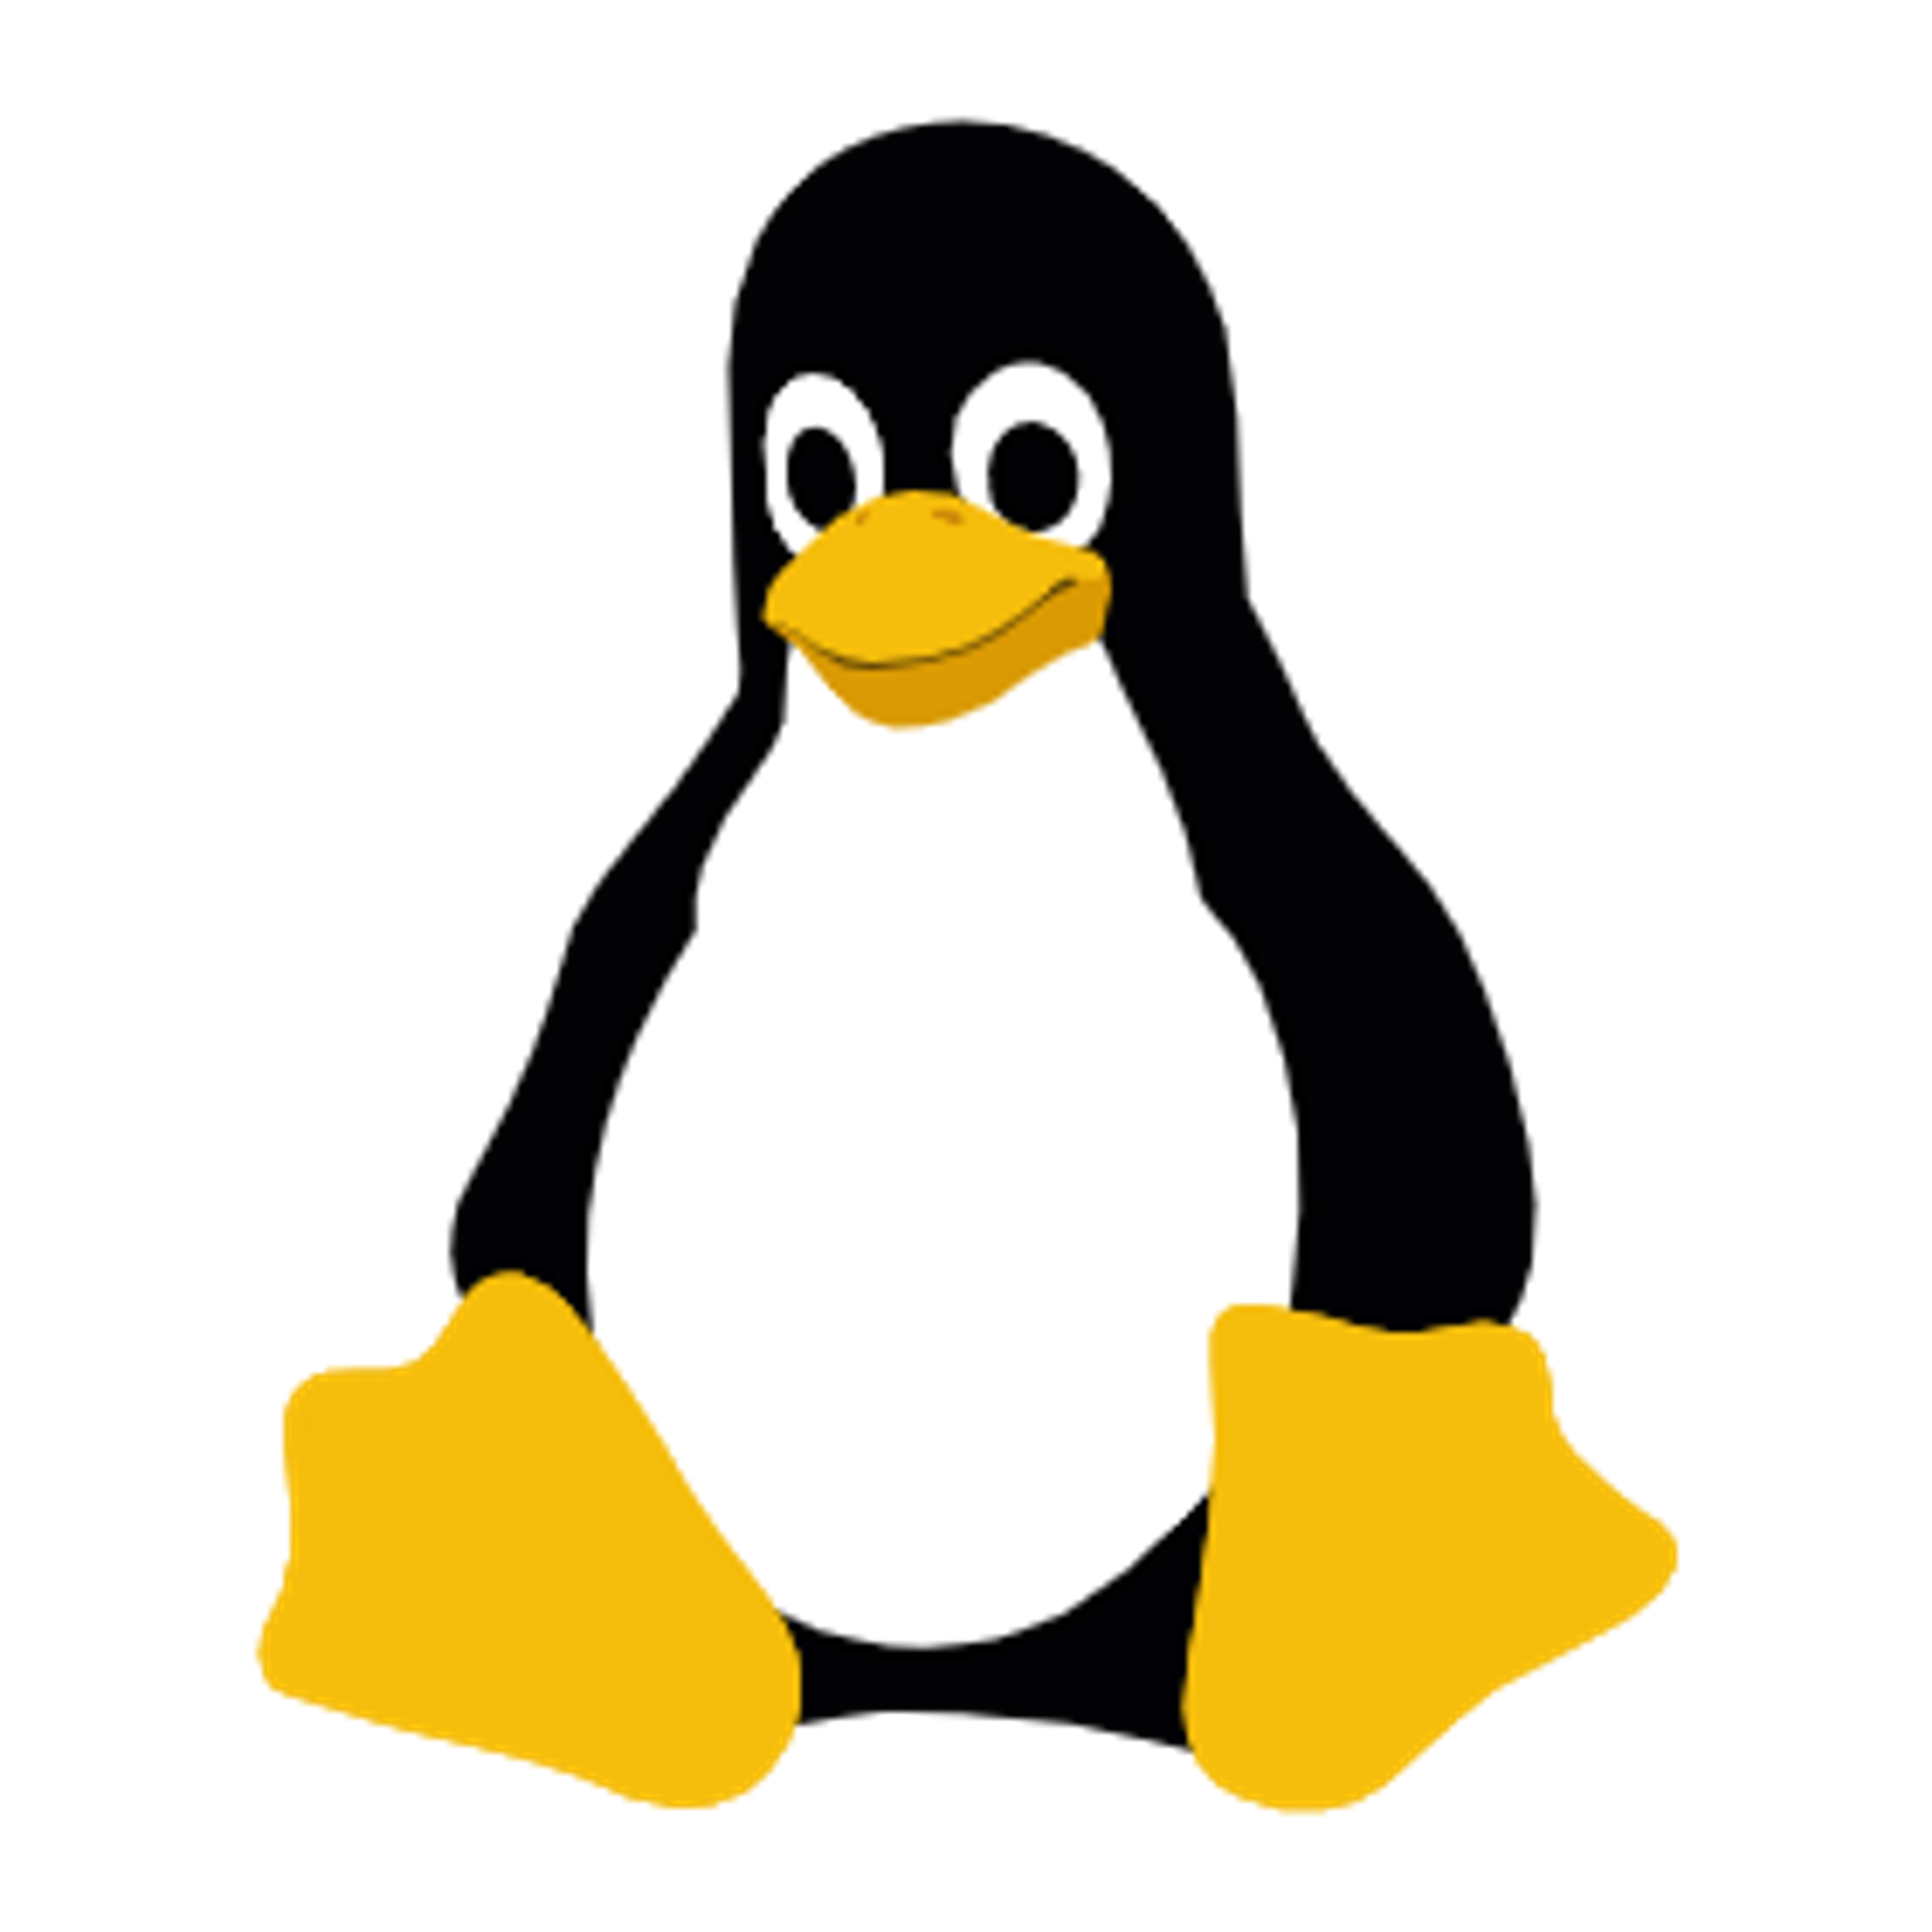 常见 Linux 发行版本更换国内源